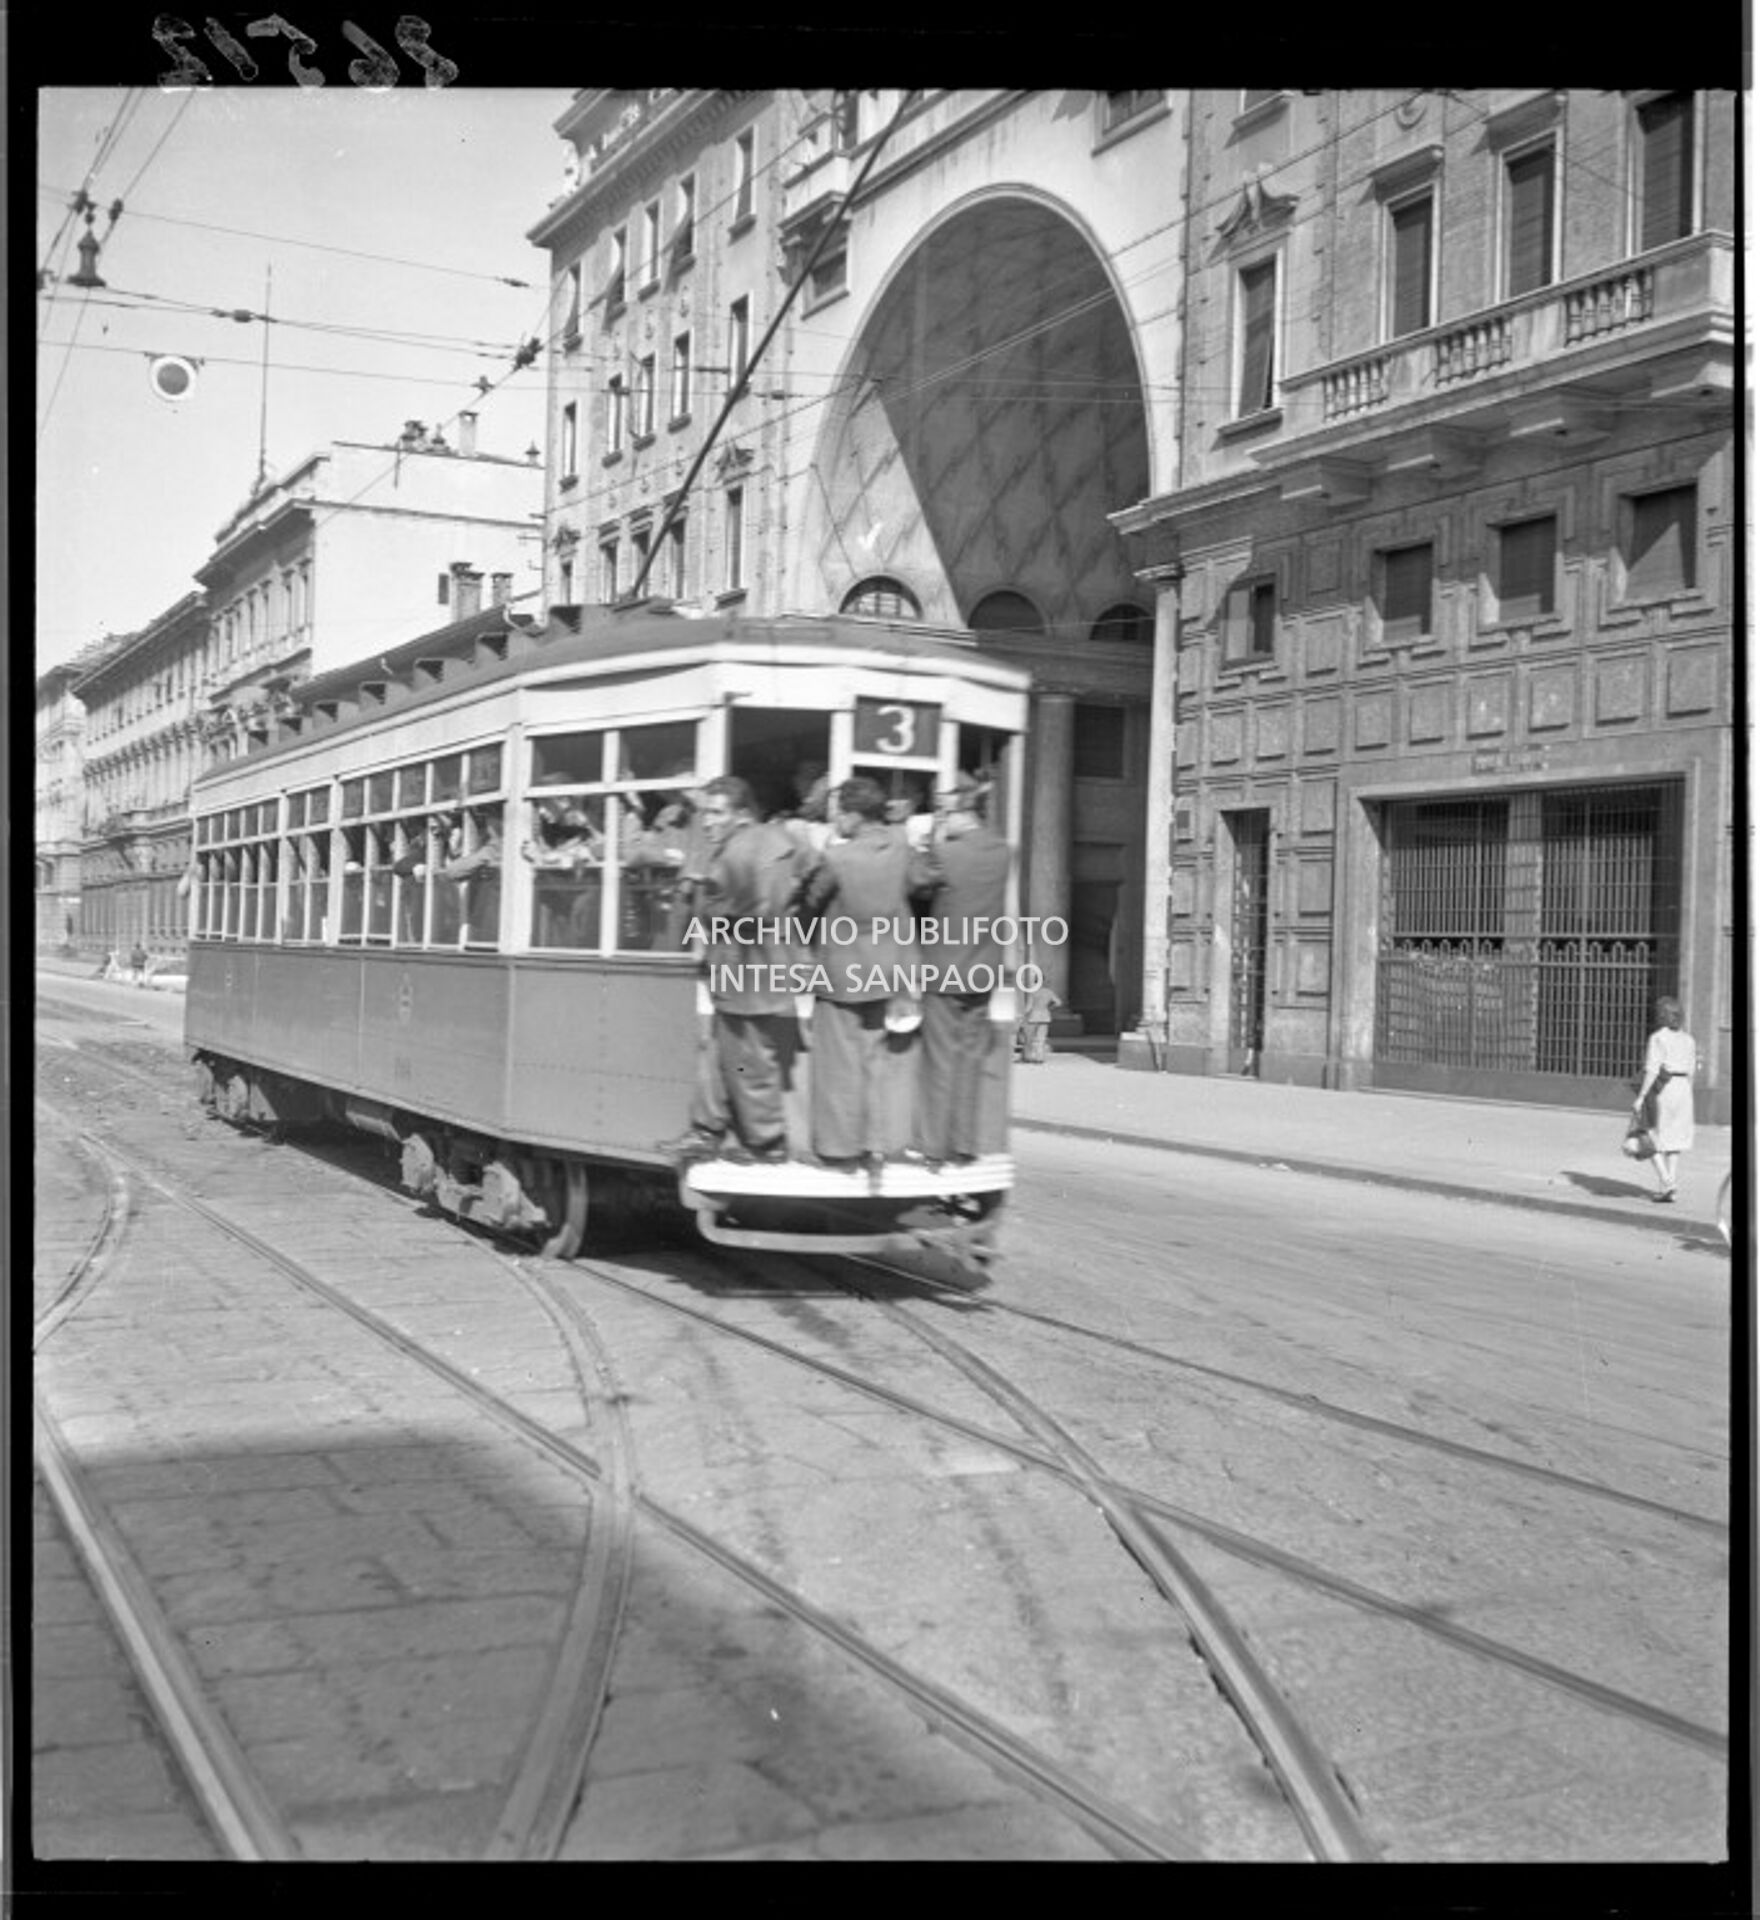 Tram tipo 1928, linea 3, in transito in corso Venezia a Milano; la vettura è così affollata che alcuni passeggeri viaggiano in piedi sul paraurti posteriore (dipinto di bianco per aumentarne la visibilità durante l'oscuramento)